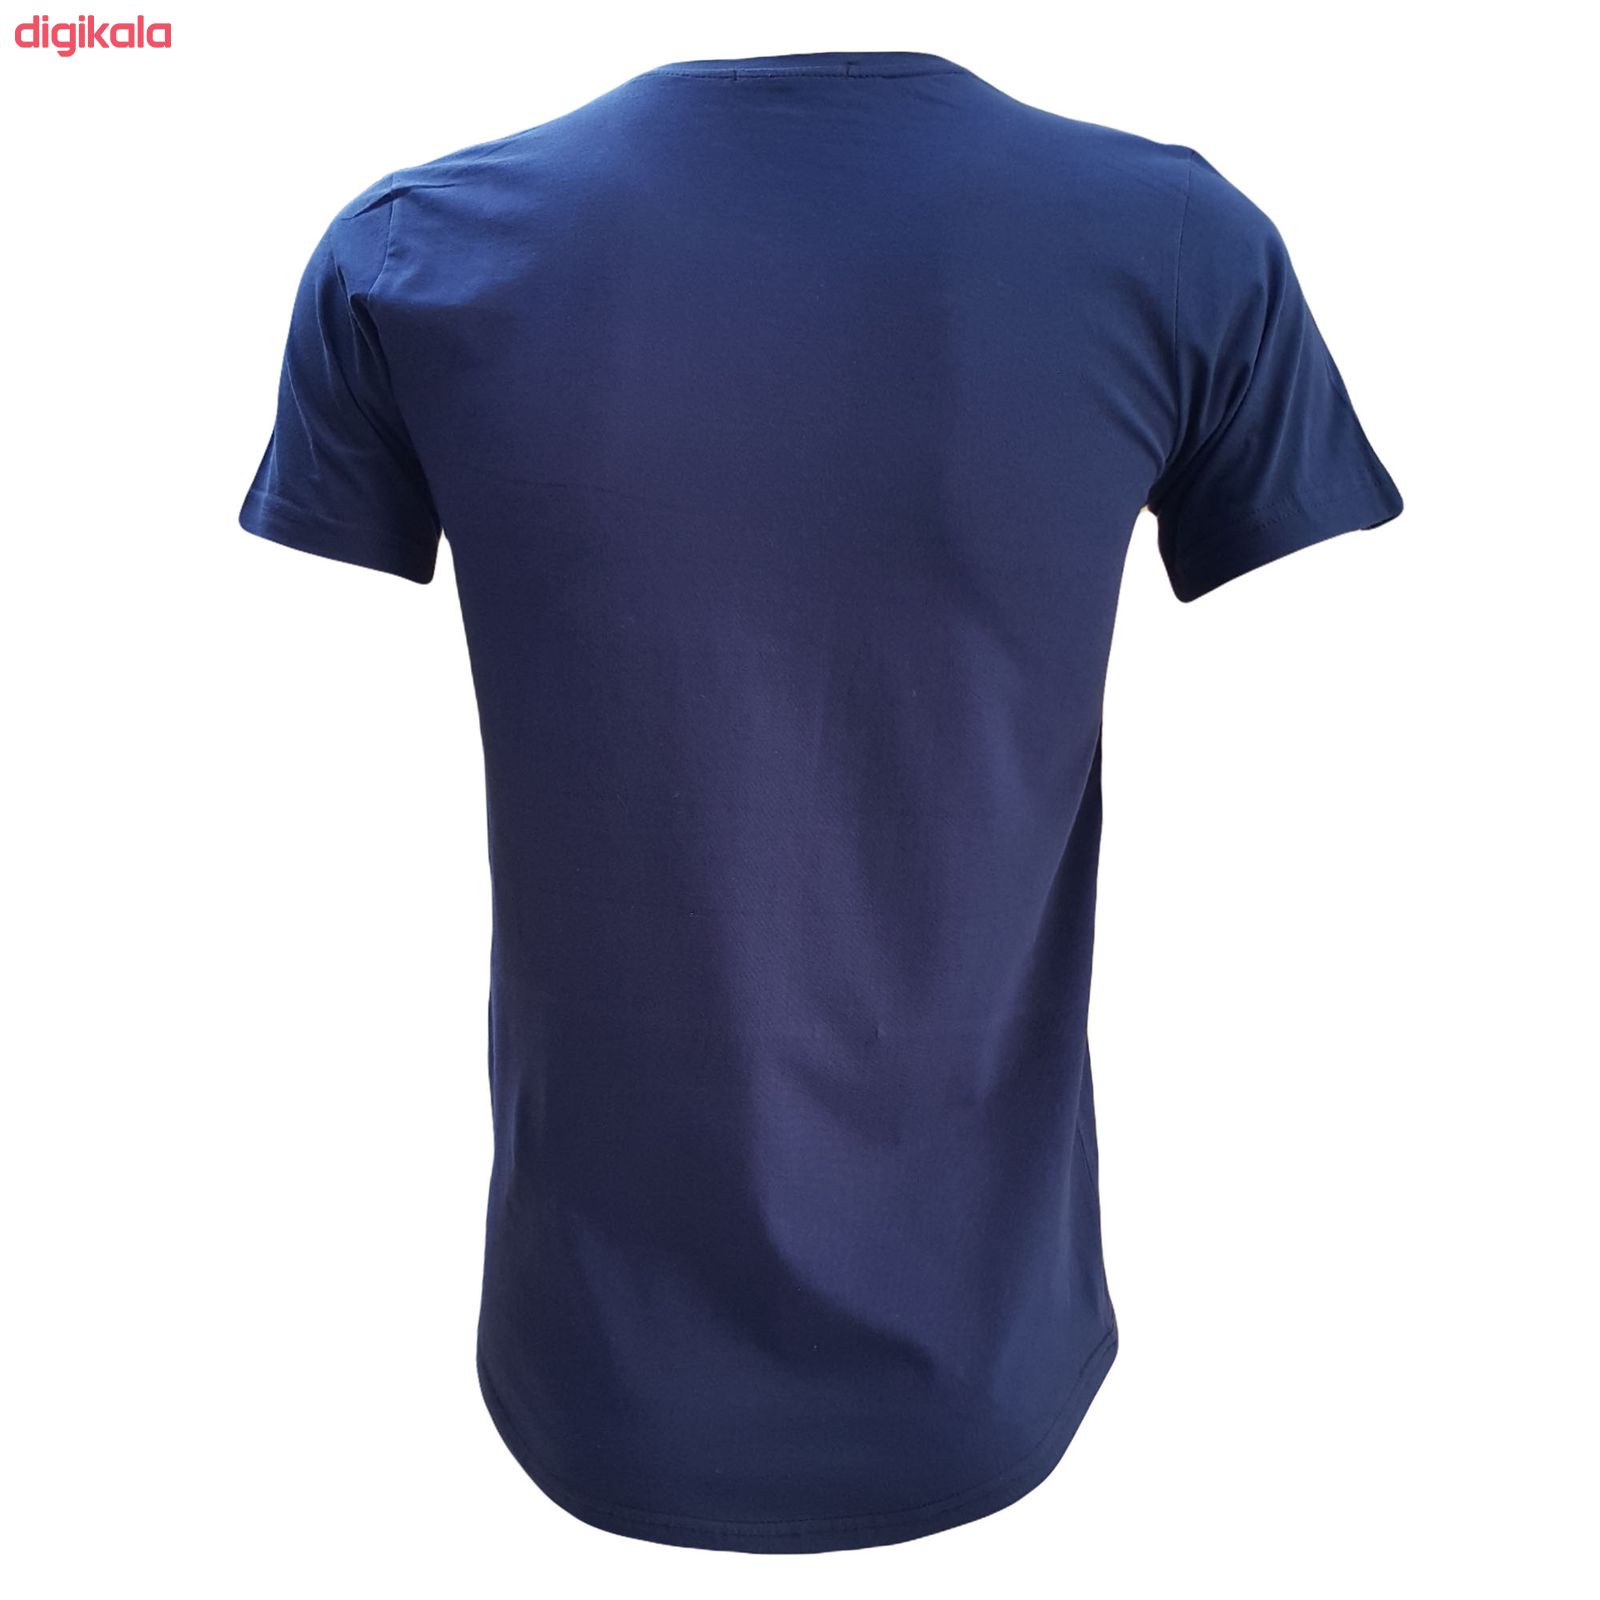  تی شرت آستین کوتاه مردانه طرح آژاکس کد A256G رنگ سرمه ای